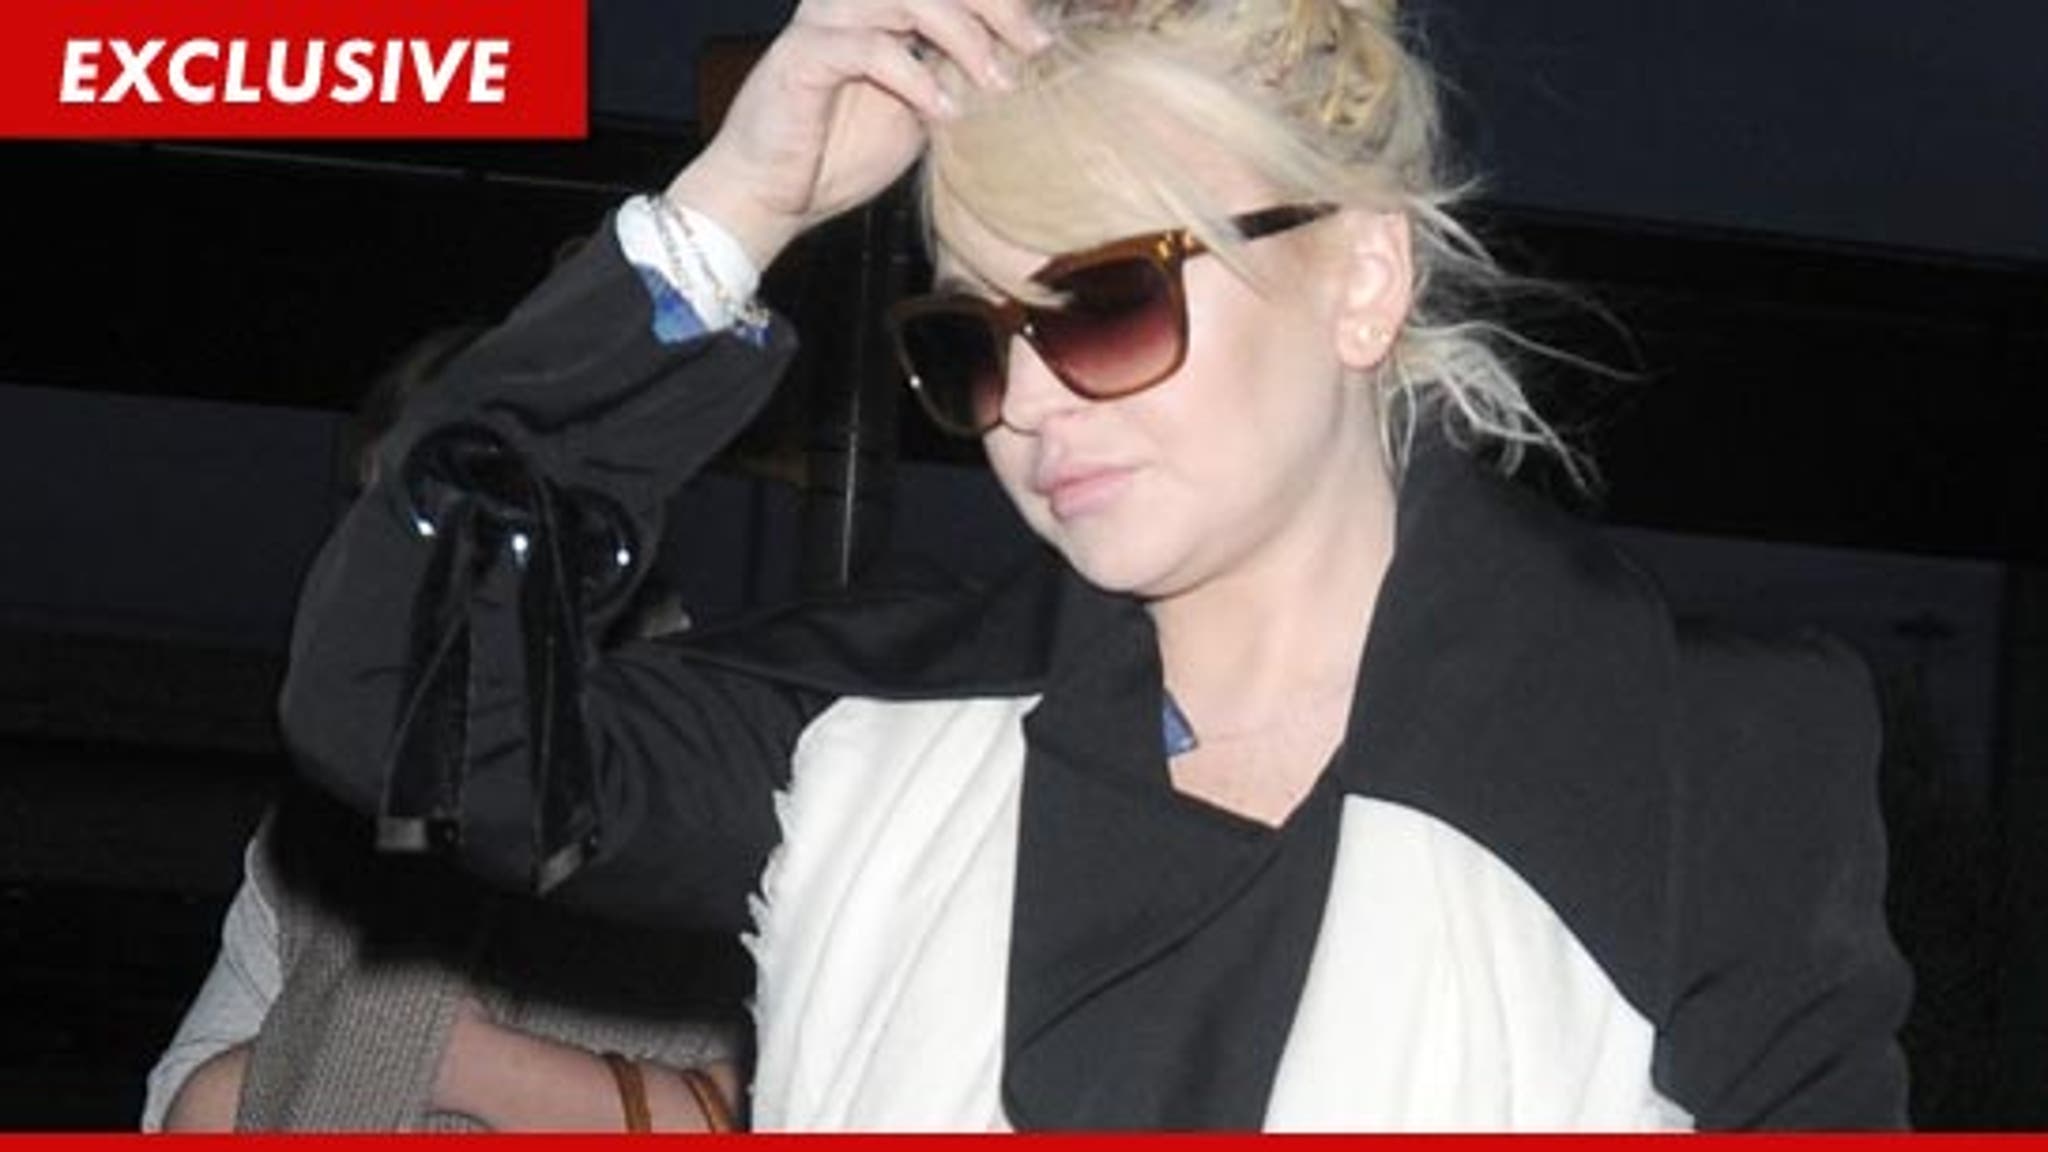 Lindsay Lohans Alleged Victim Pay Me At Least 100k Or Else